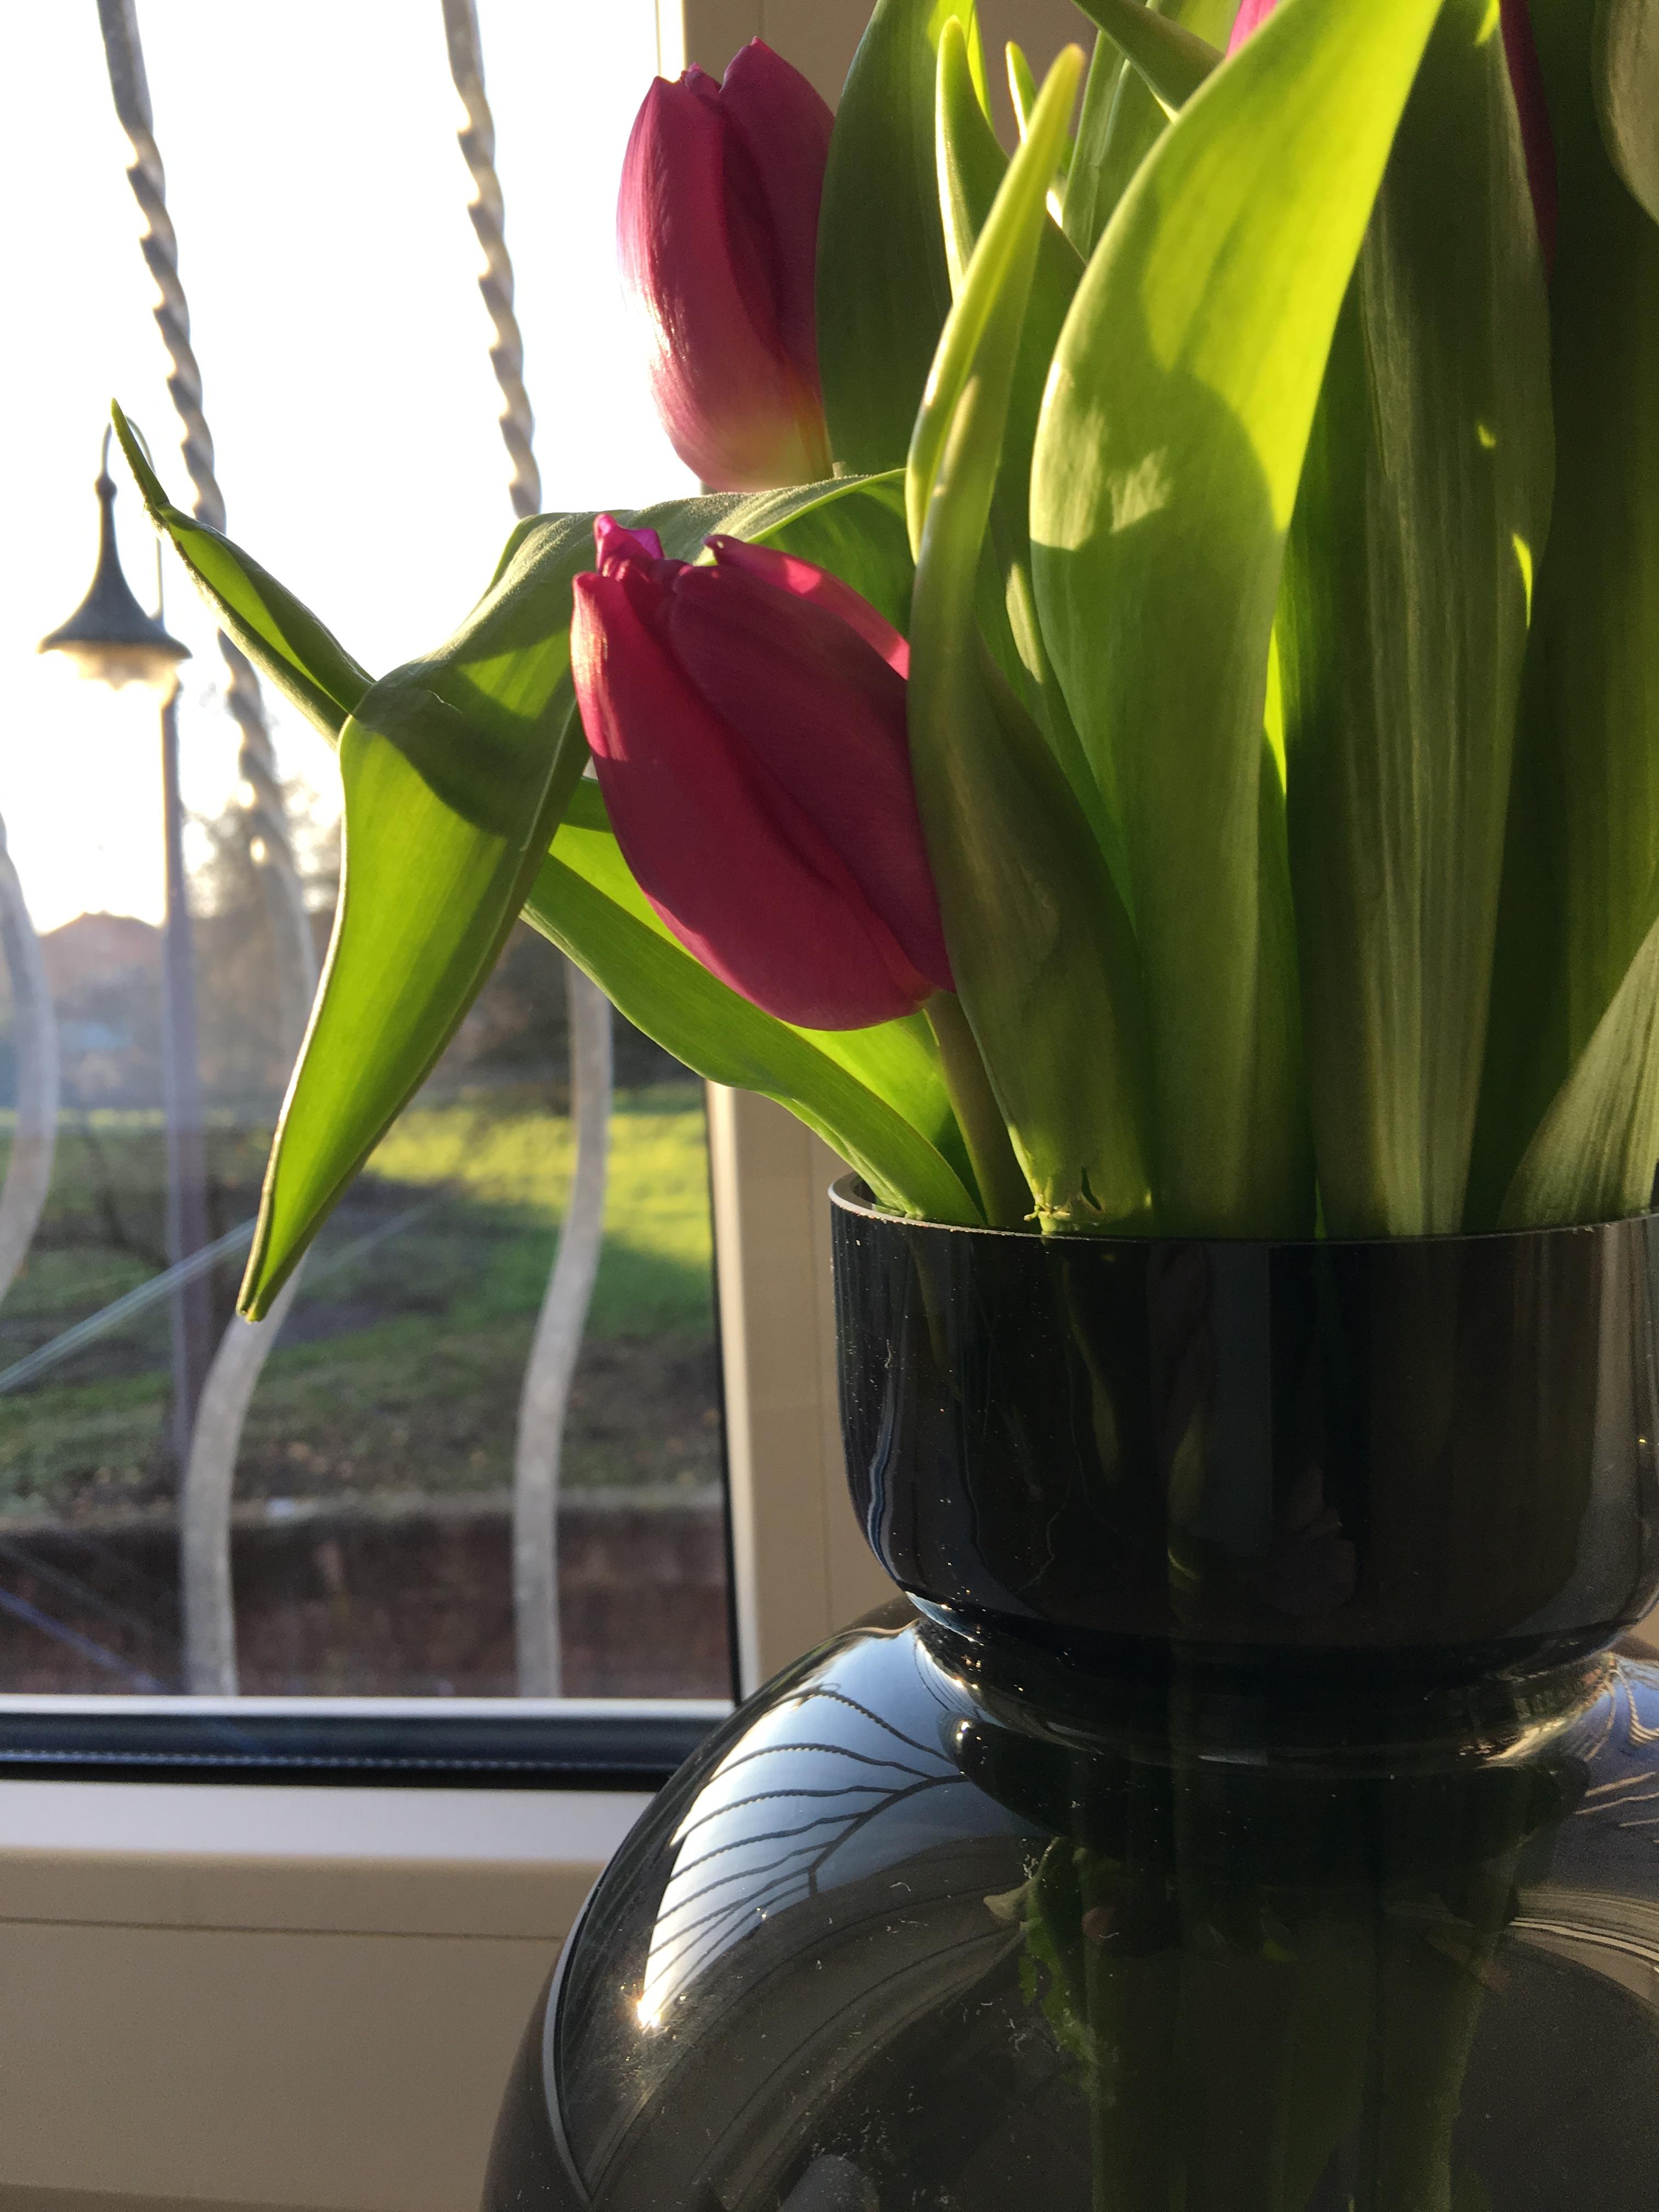 #tulpenliebe #blumen #fensterblick #Tulpen #tulpen